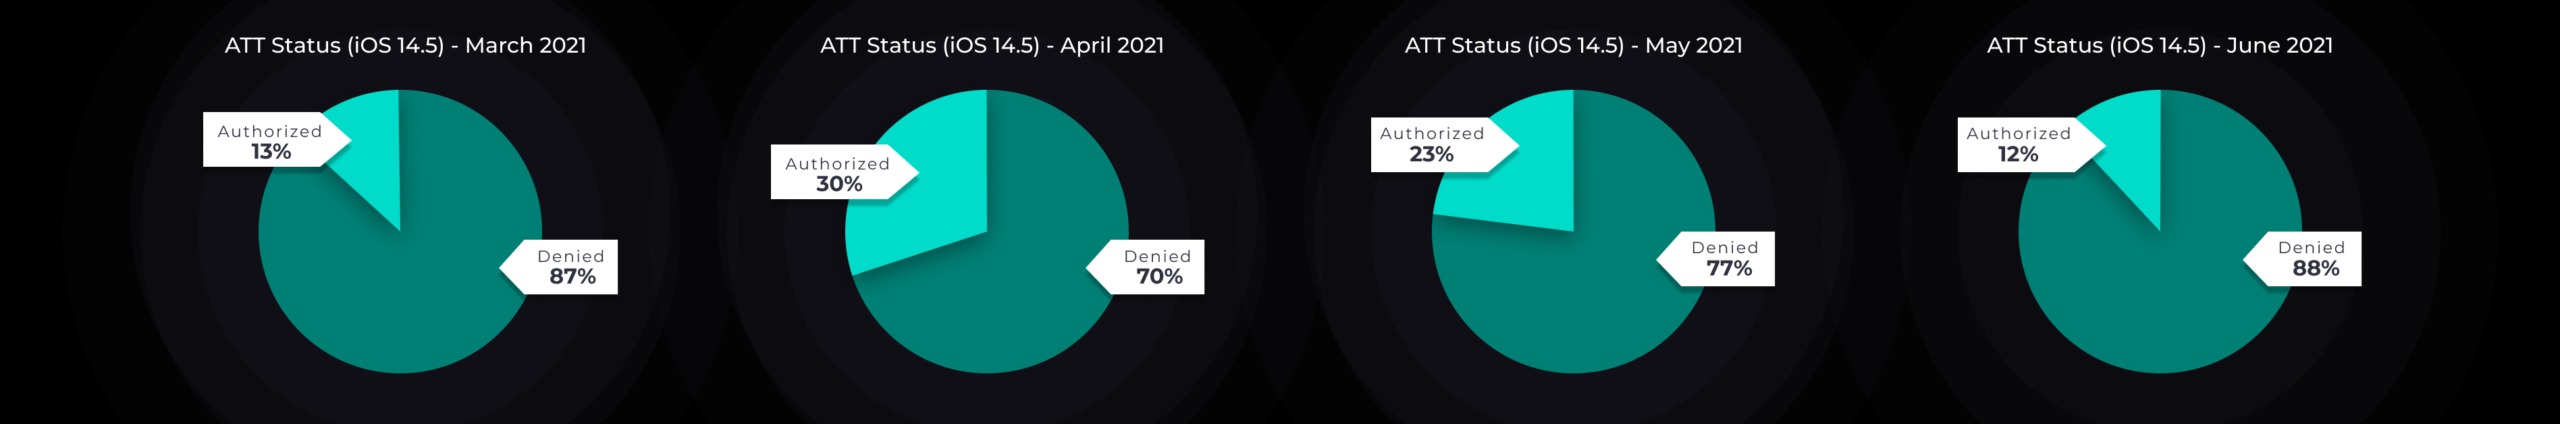 ATT Status - June 2021